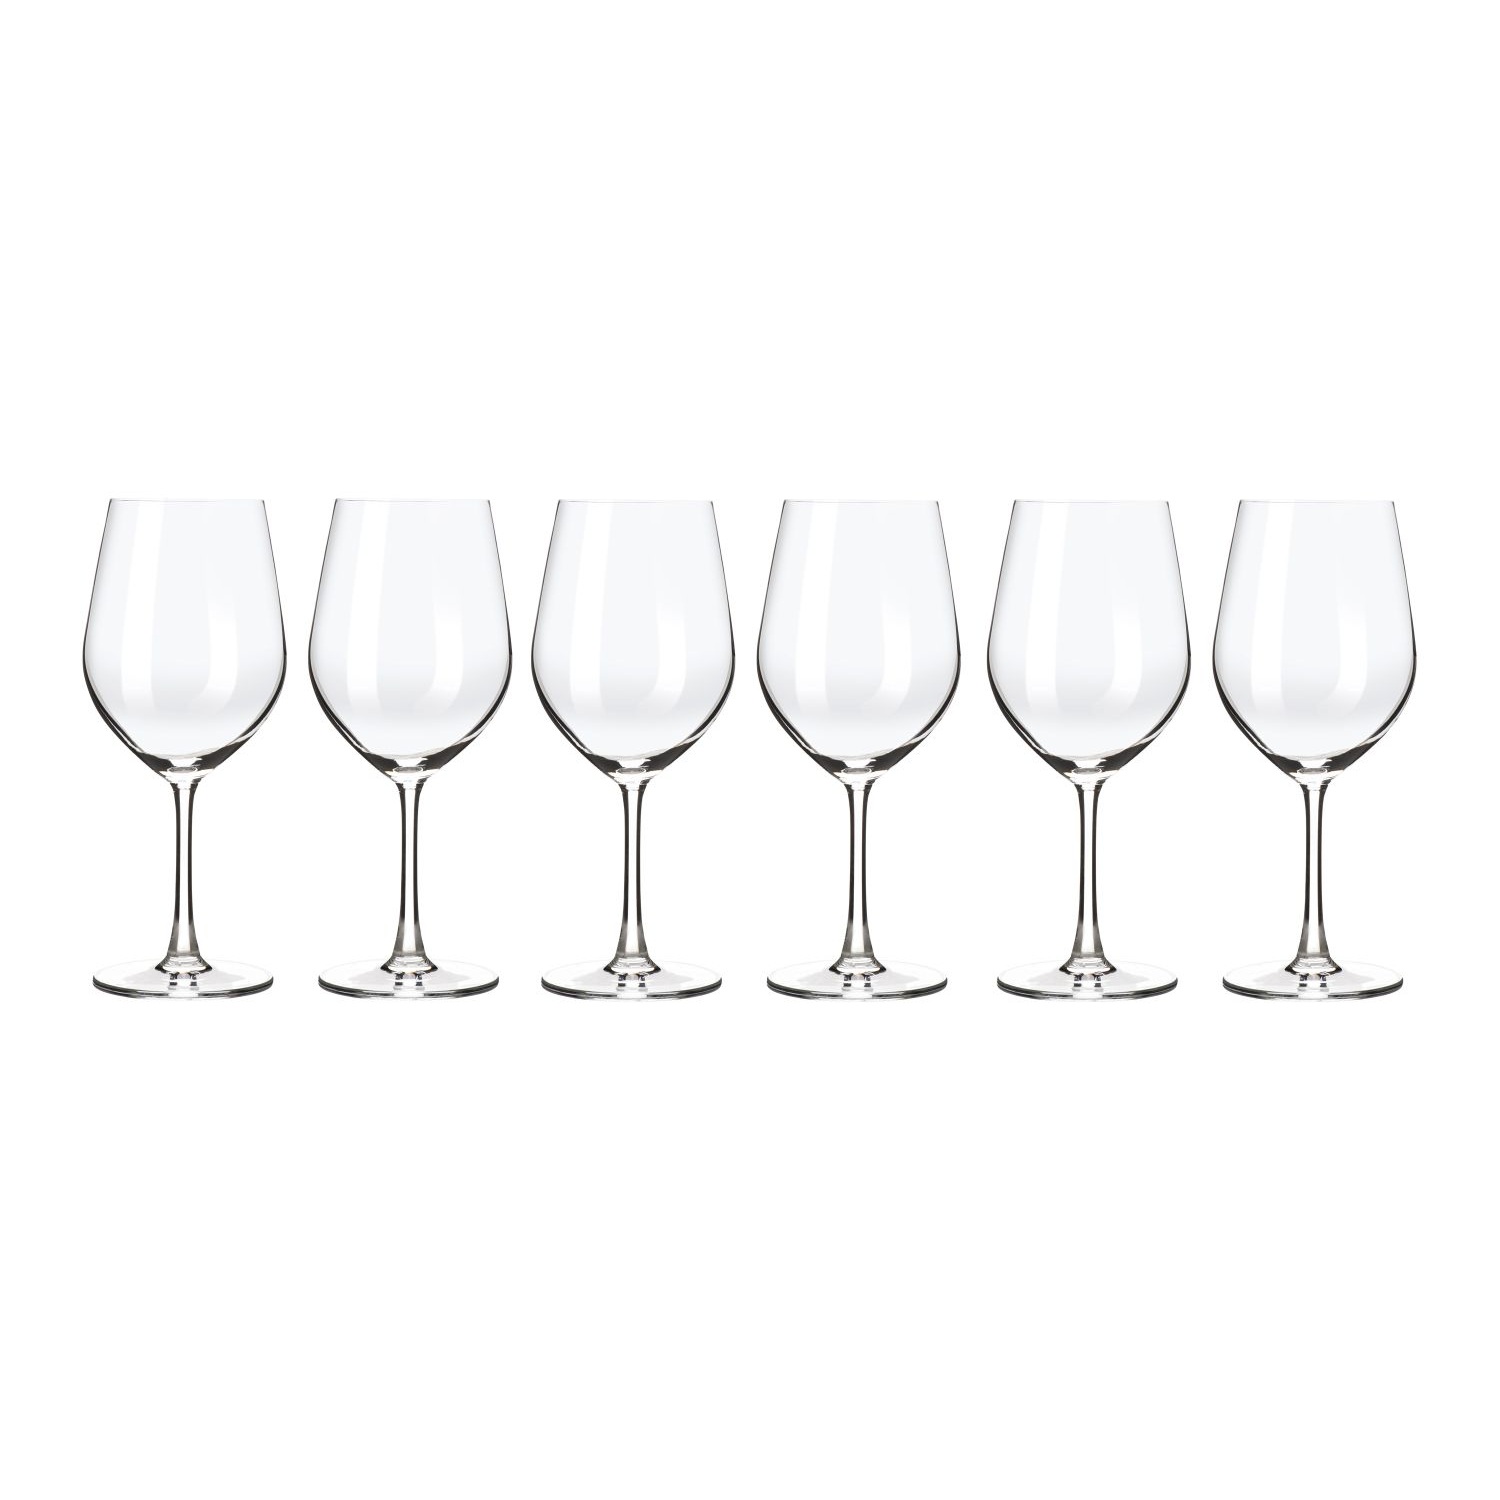 Набор бокалов Maxwell & Williams Cosmopolitan для вина 0,59 л adriana бокалы для белого вина 6 шт